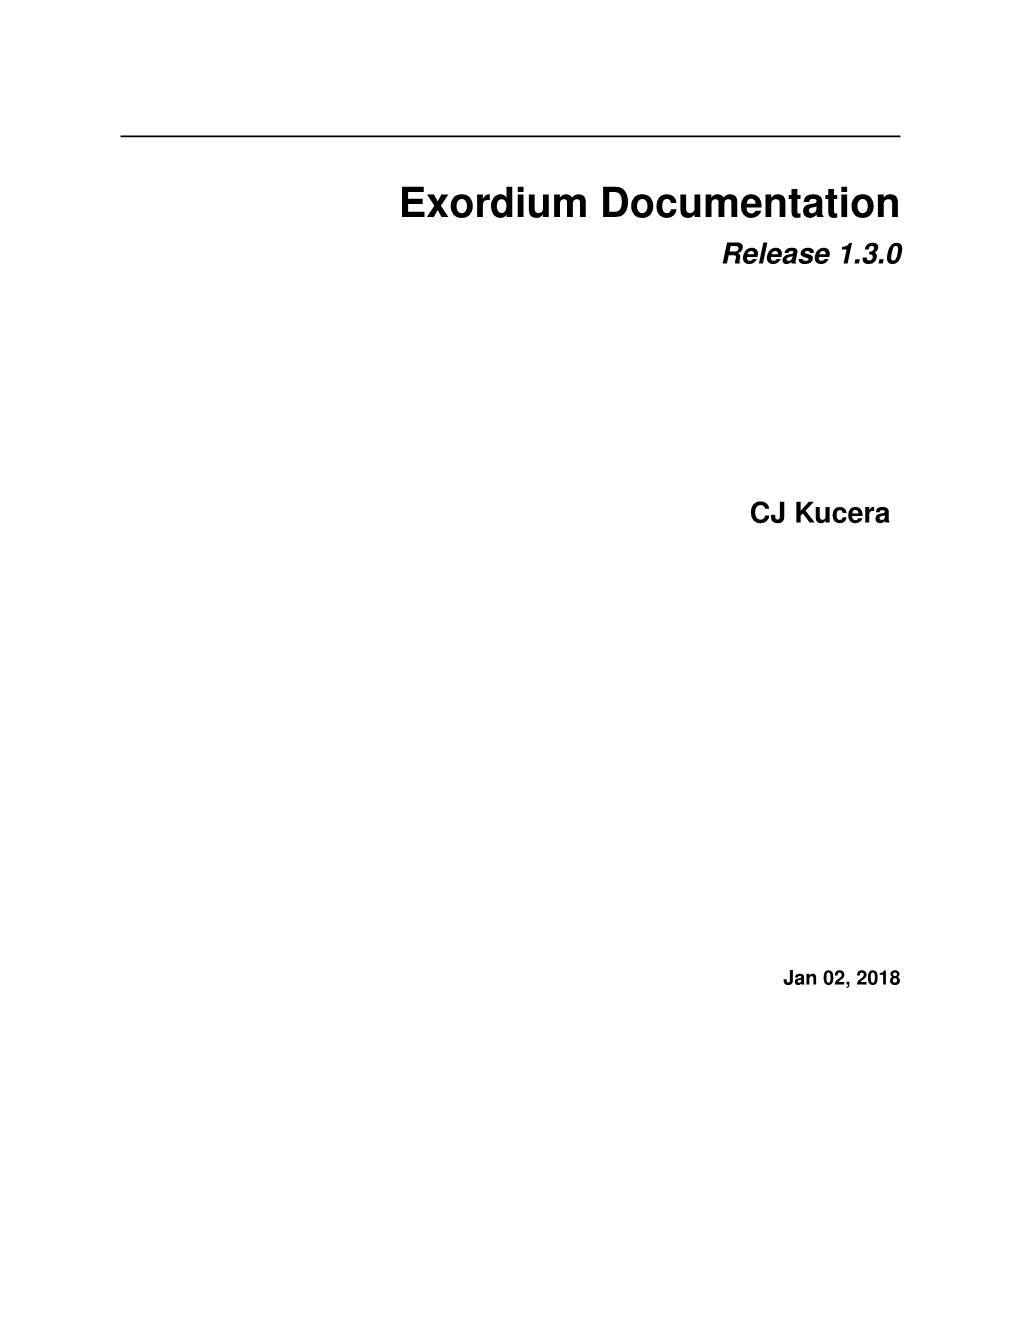 Exordium Documentation Release 1.3.0